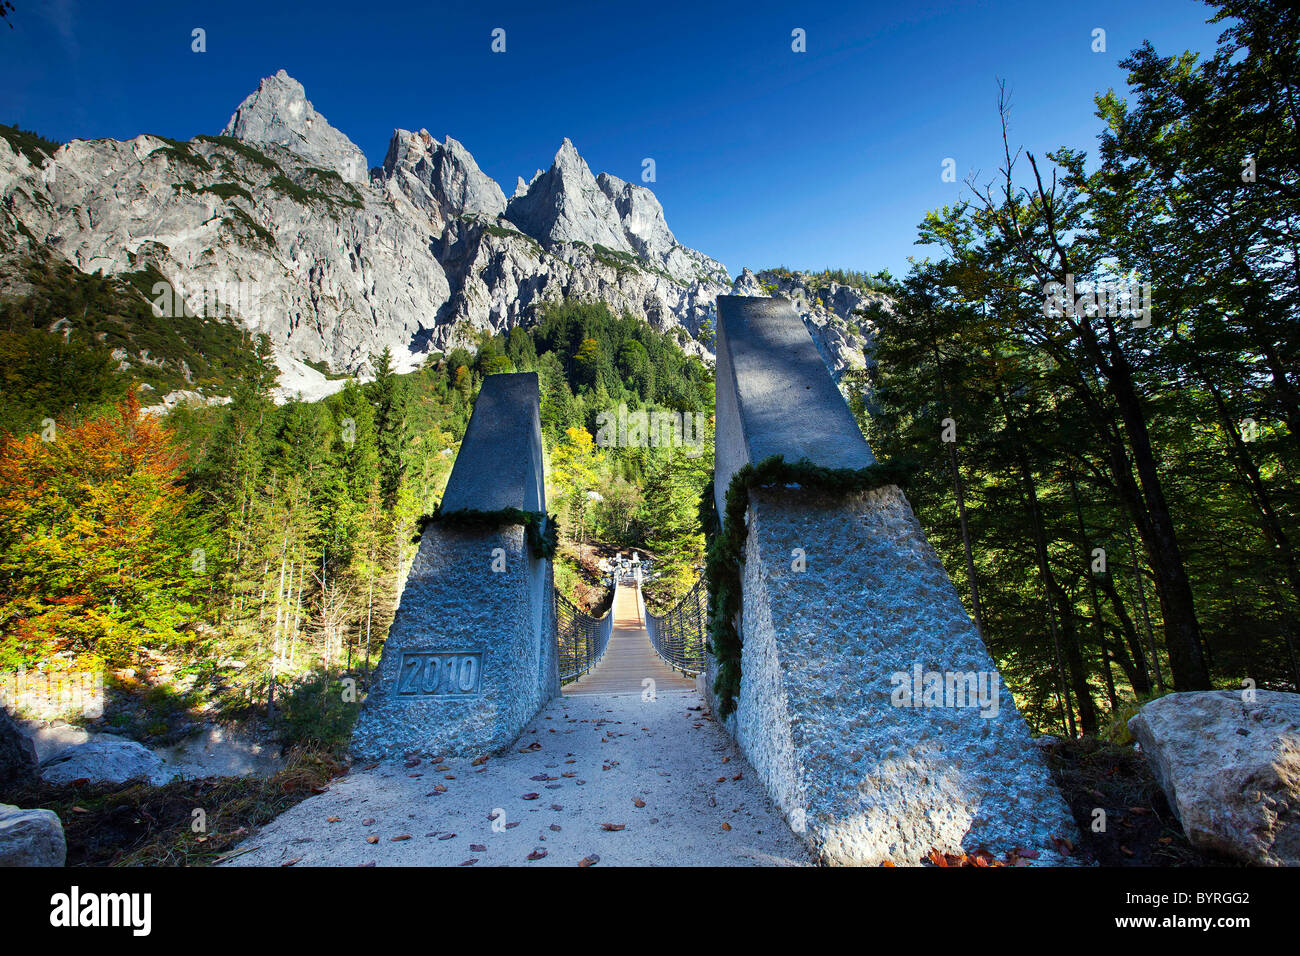 Un pont suspendu traverse la vallée Klausbachtal au parc national de Berchtesgaden, Allemagne. Banque D'Images